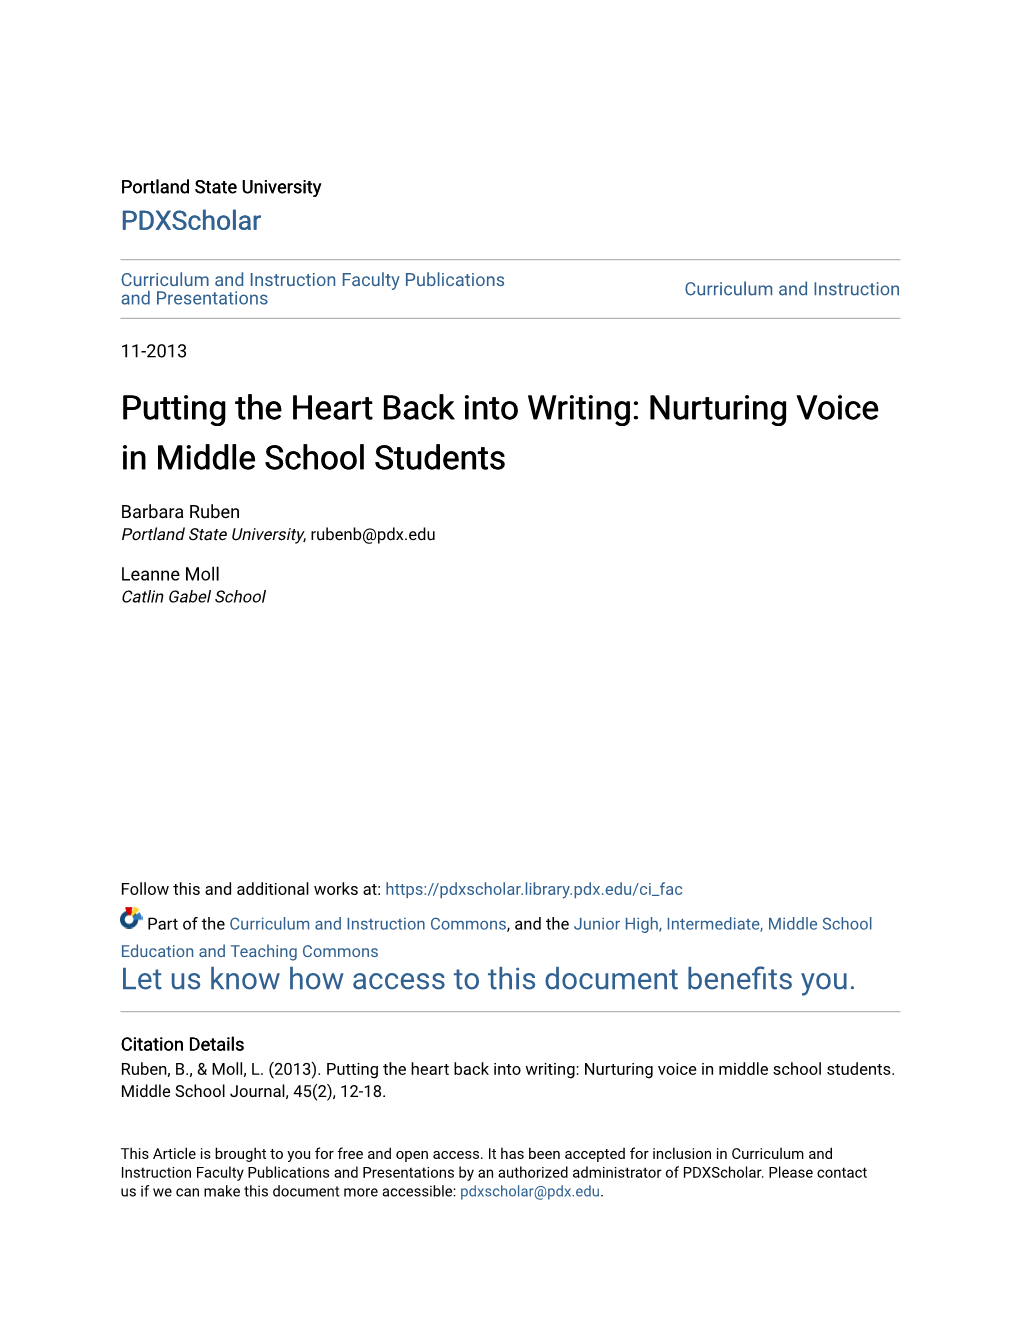 Nurturing Voice in Middle School Students